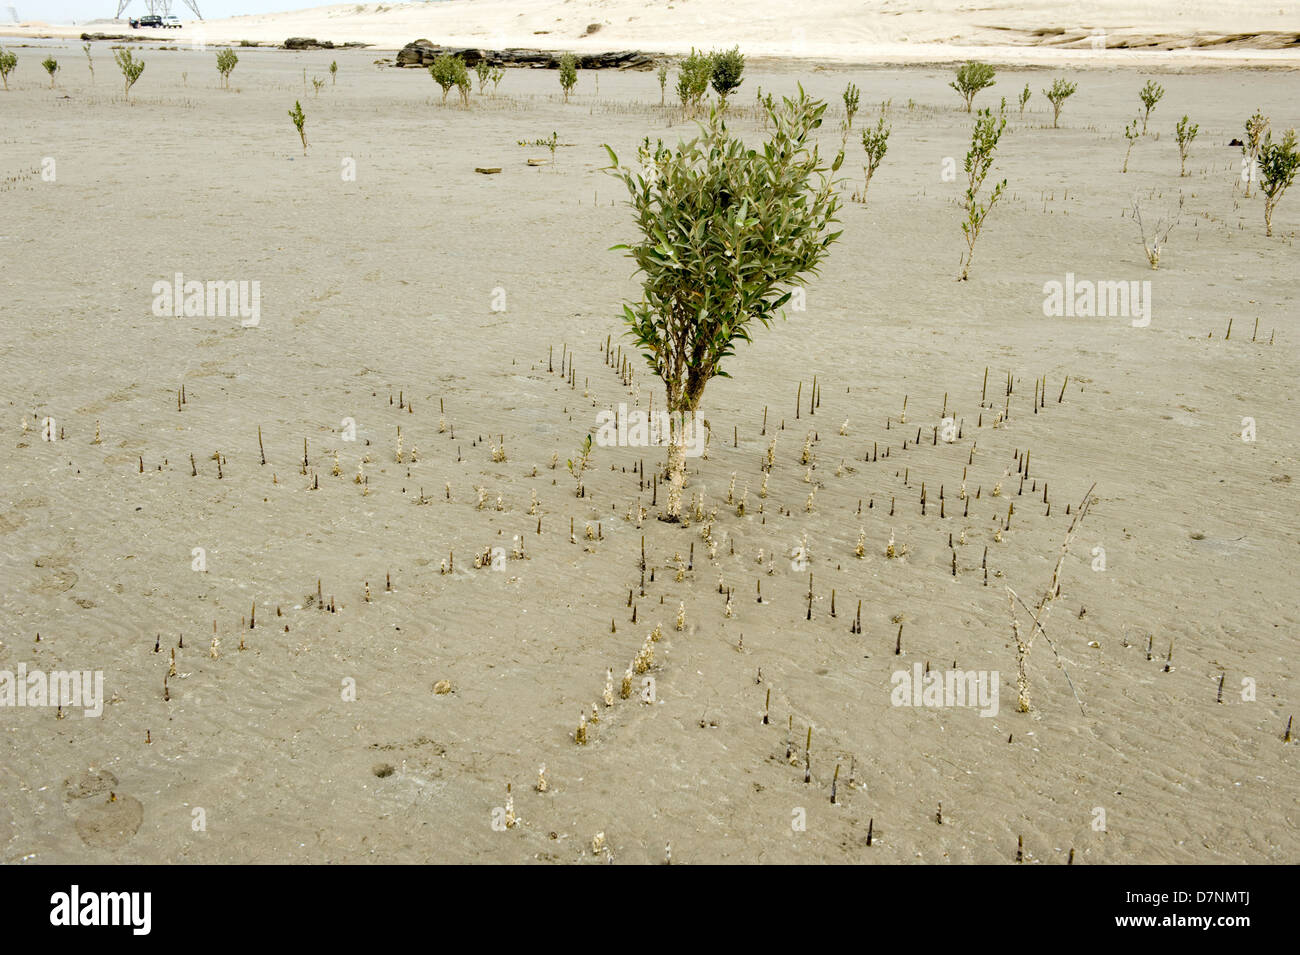 Une jeune mangrove gris, Avicennia marina, arbre à marée basse avec des racines aériennes ou pneumatophores coller jusqu'au-dessus du sable Banque D'Images